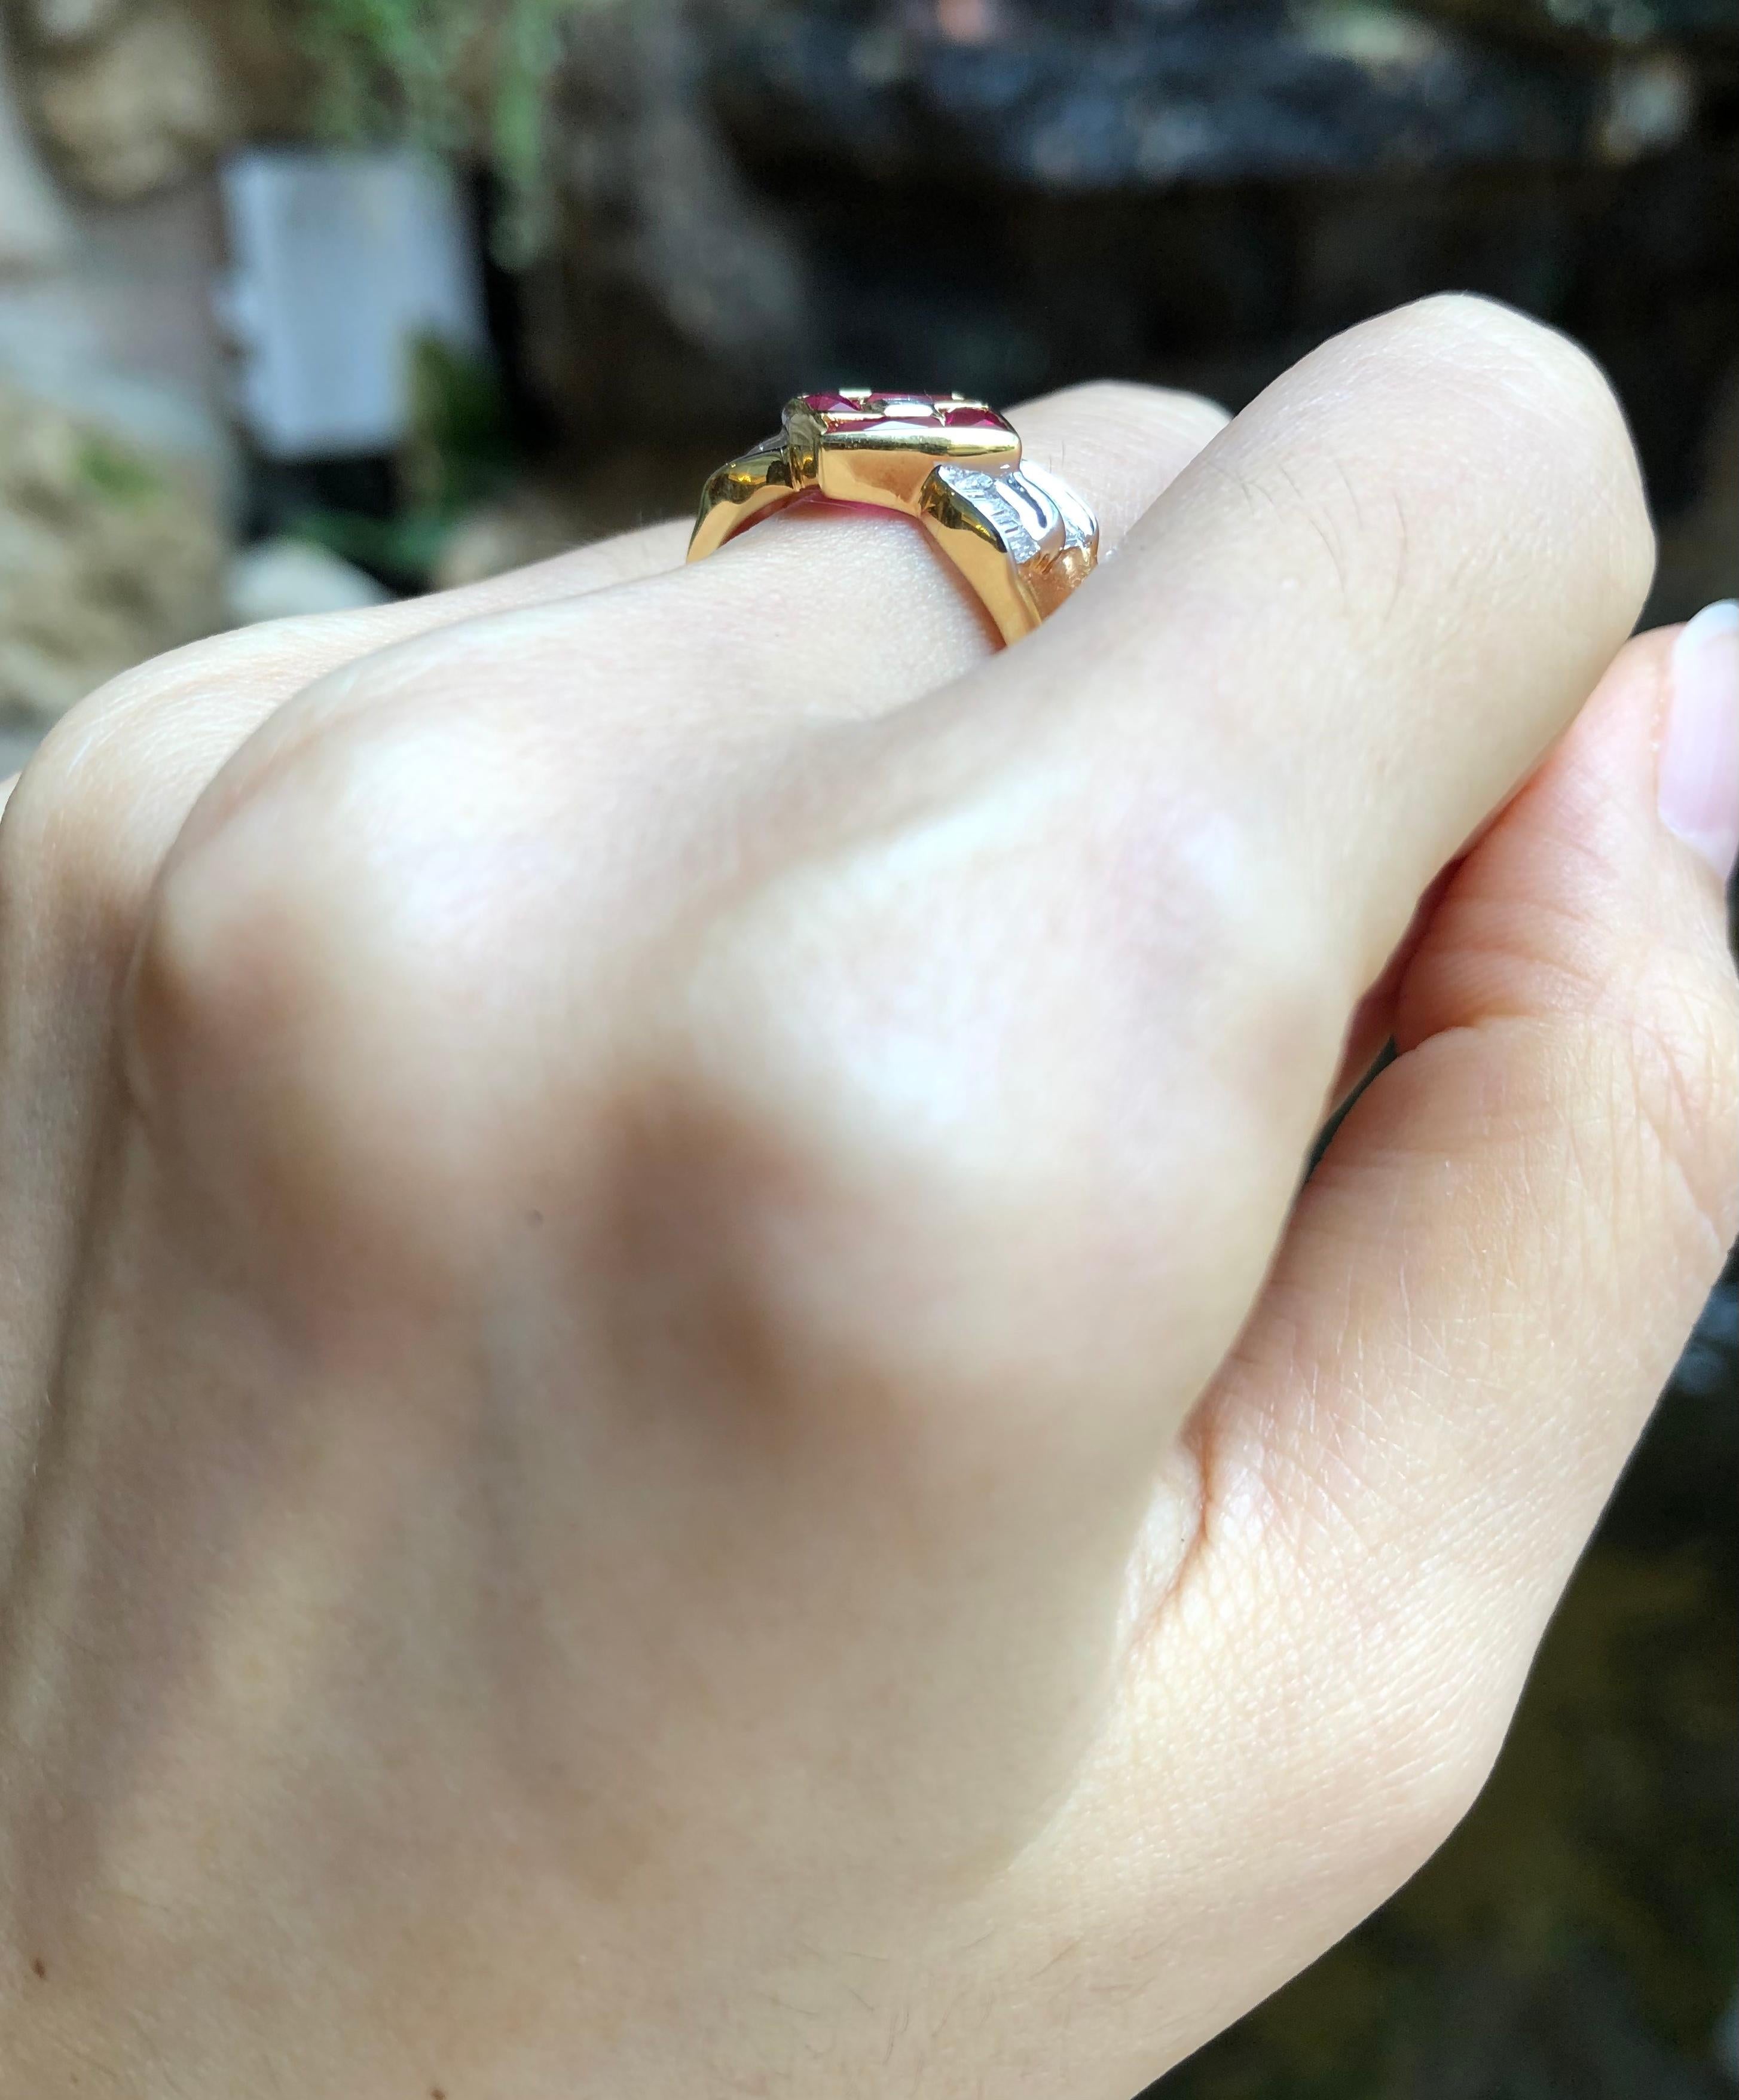 Rubin 1,70 Karat mit Diamant 0,22 Karat Ring in 18 Karat Goldfassung

Breite:  1.1 cm 
Länge: 1,1 cm
Ringgröße: 54
Gesamtgewicht: 5,01 Gramm

